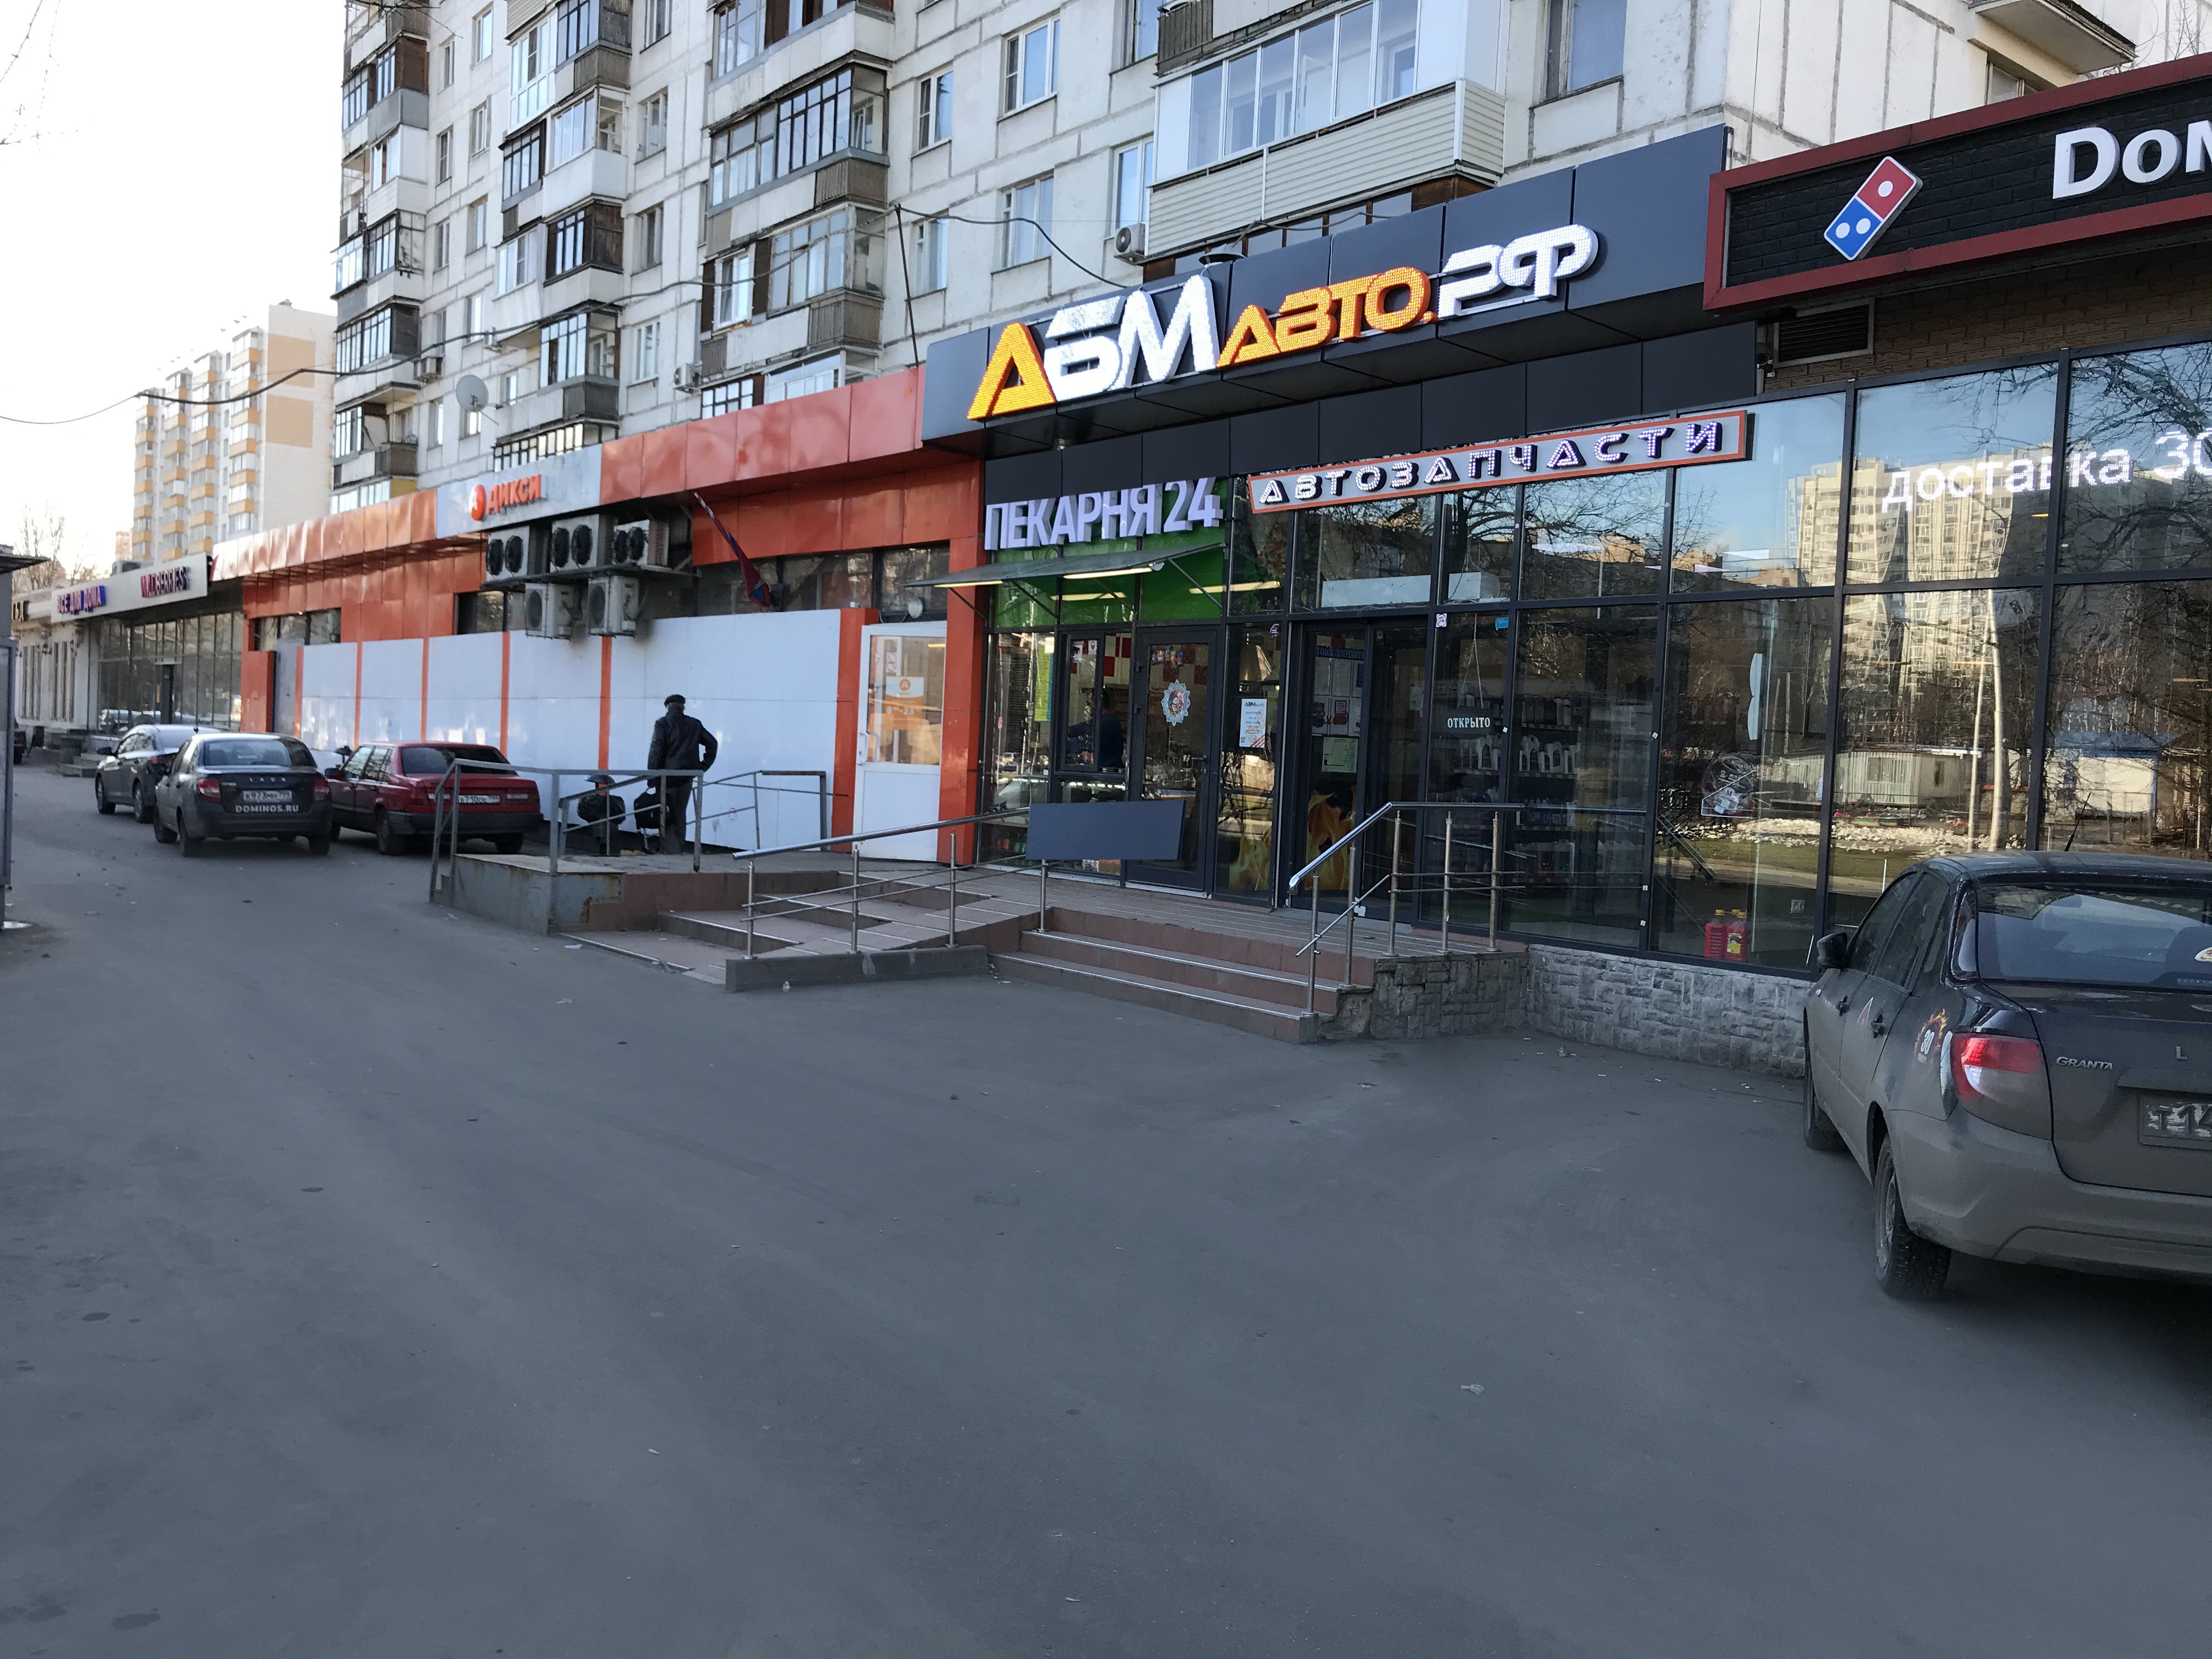 Abmauto, Алтайская улица, 19 ст1а